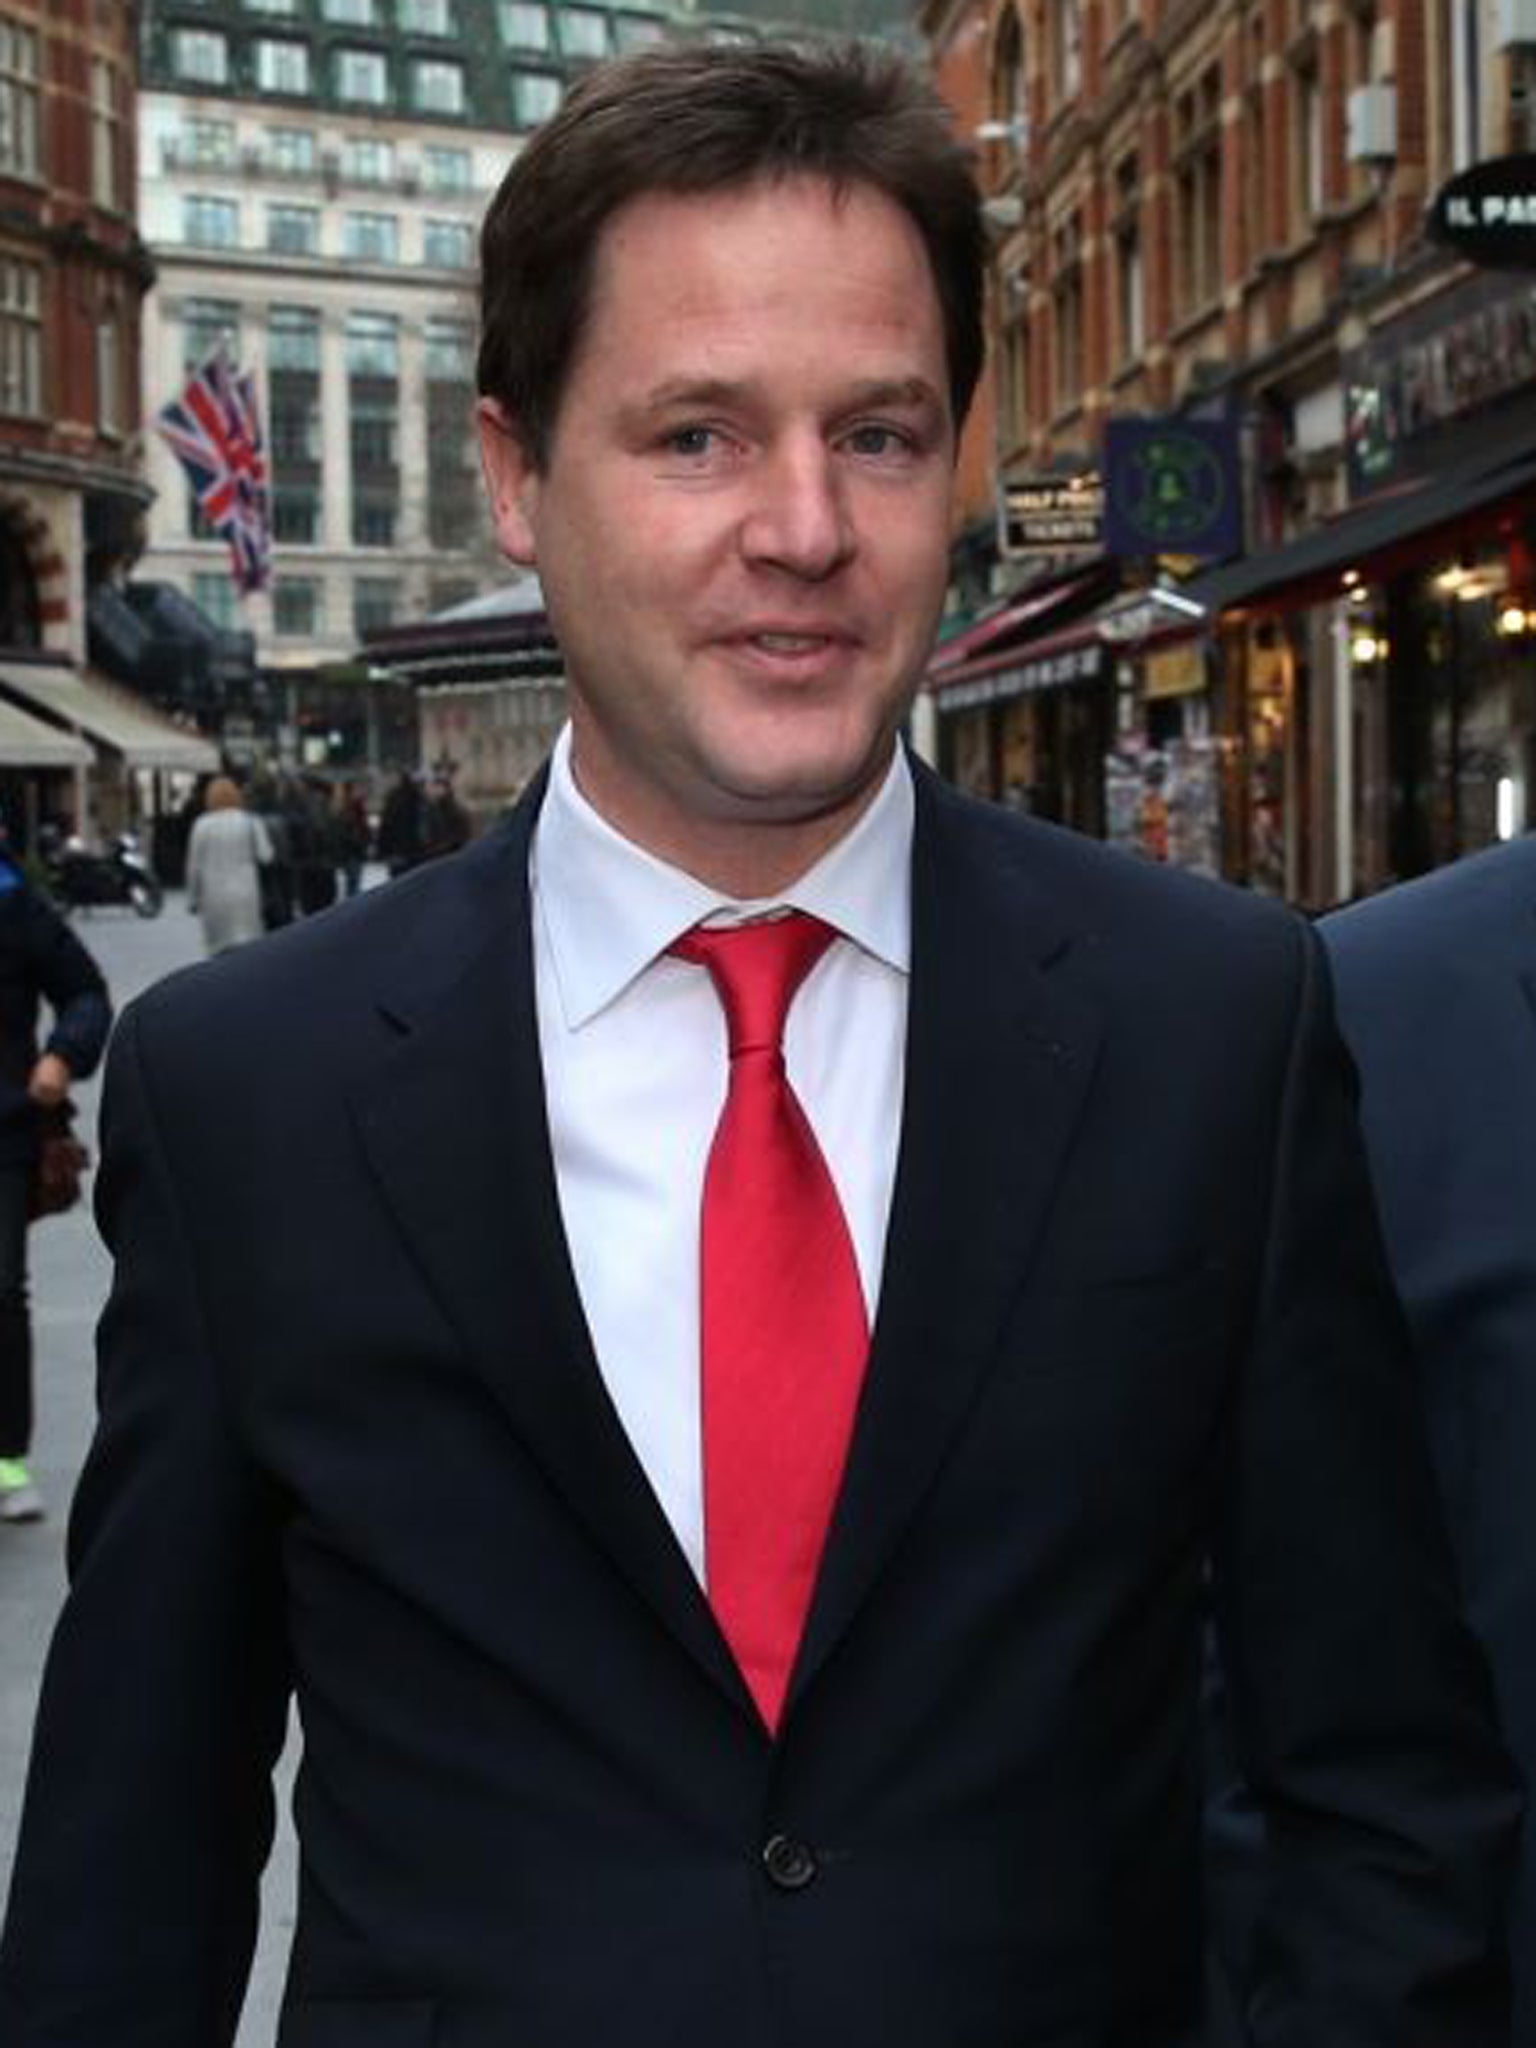 Nick Clegg in London yesterday